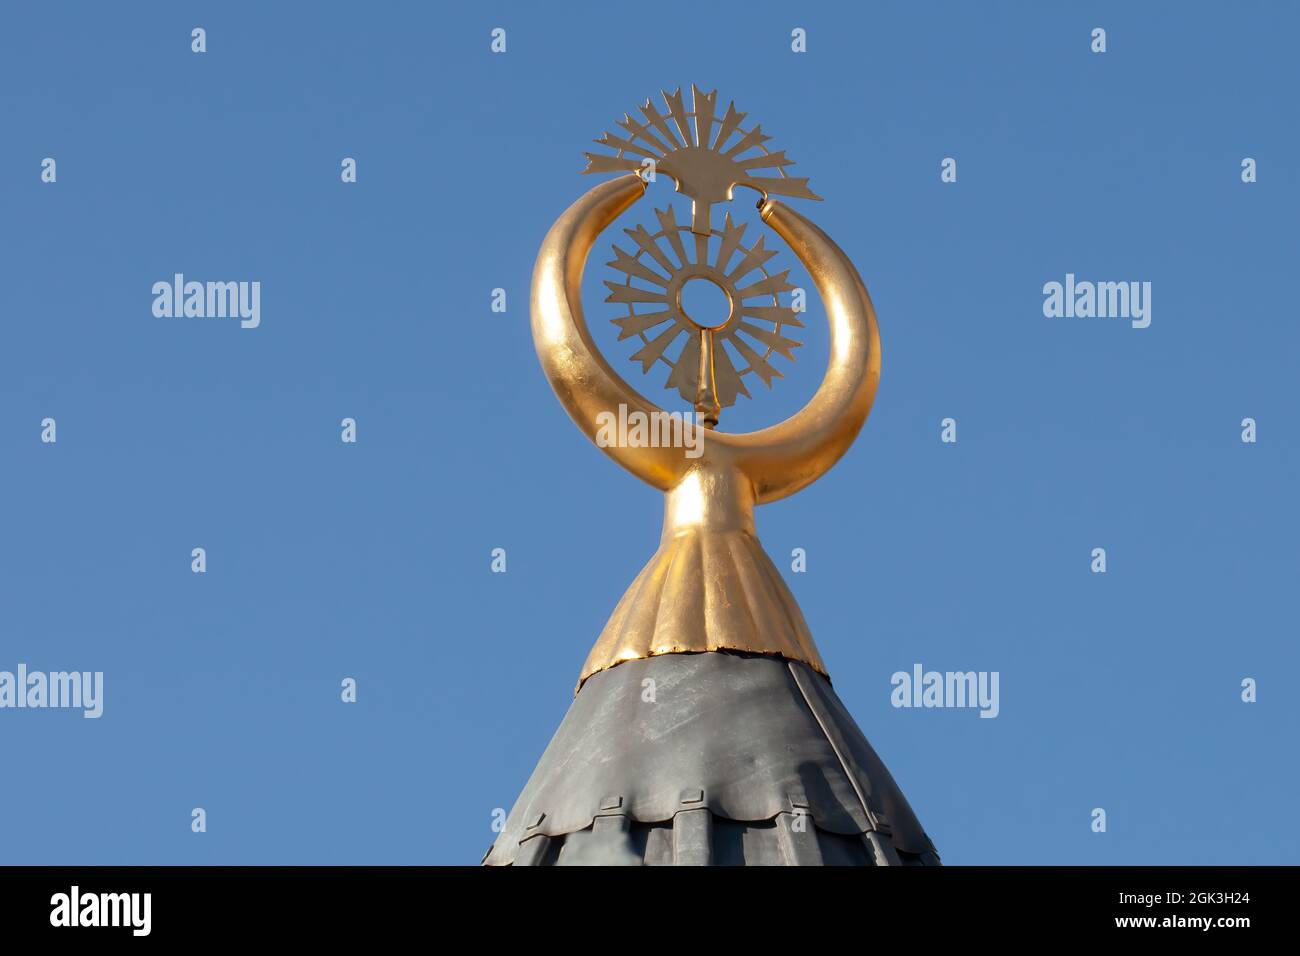 Photo en gros plan du symbole du croissant en laiton | Alem sur le toit de la fontaine du Musée Mevlana de Konya, Turquie. Banque D'Images